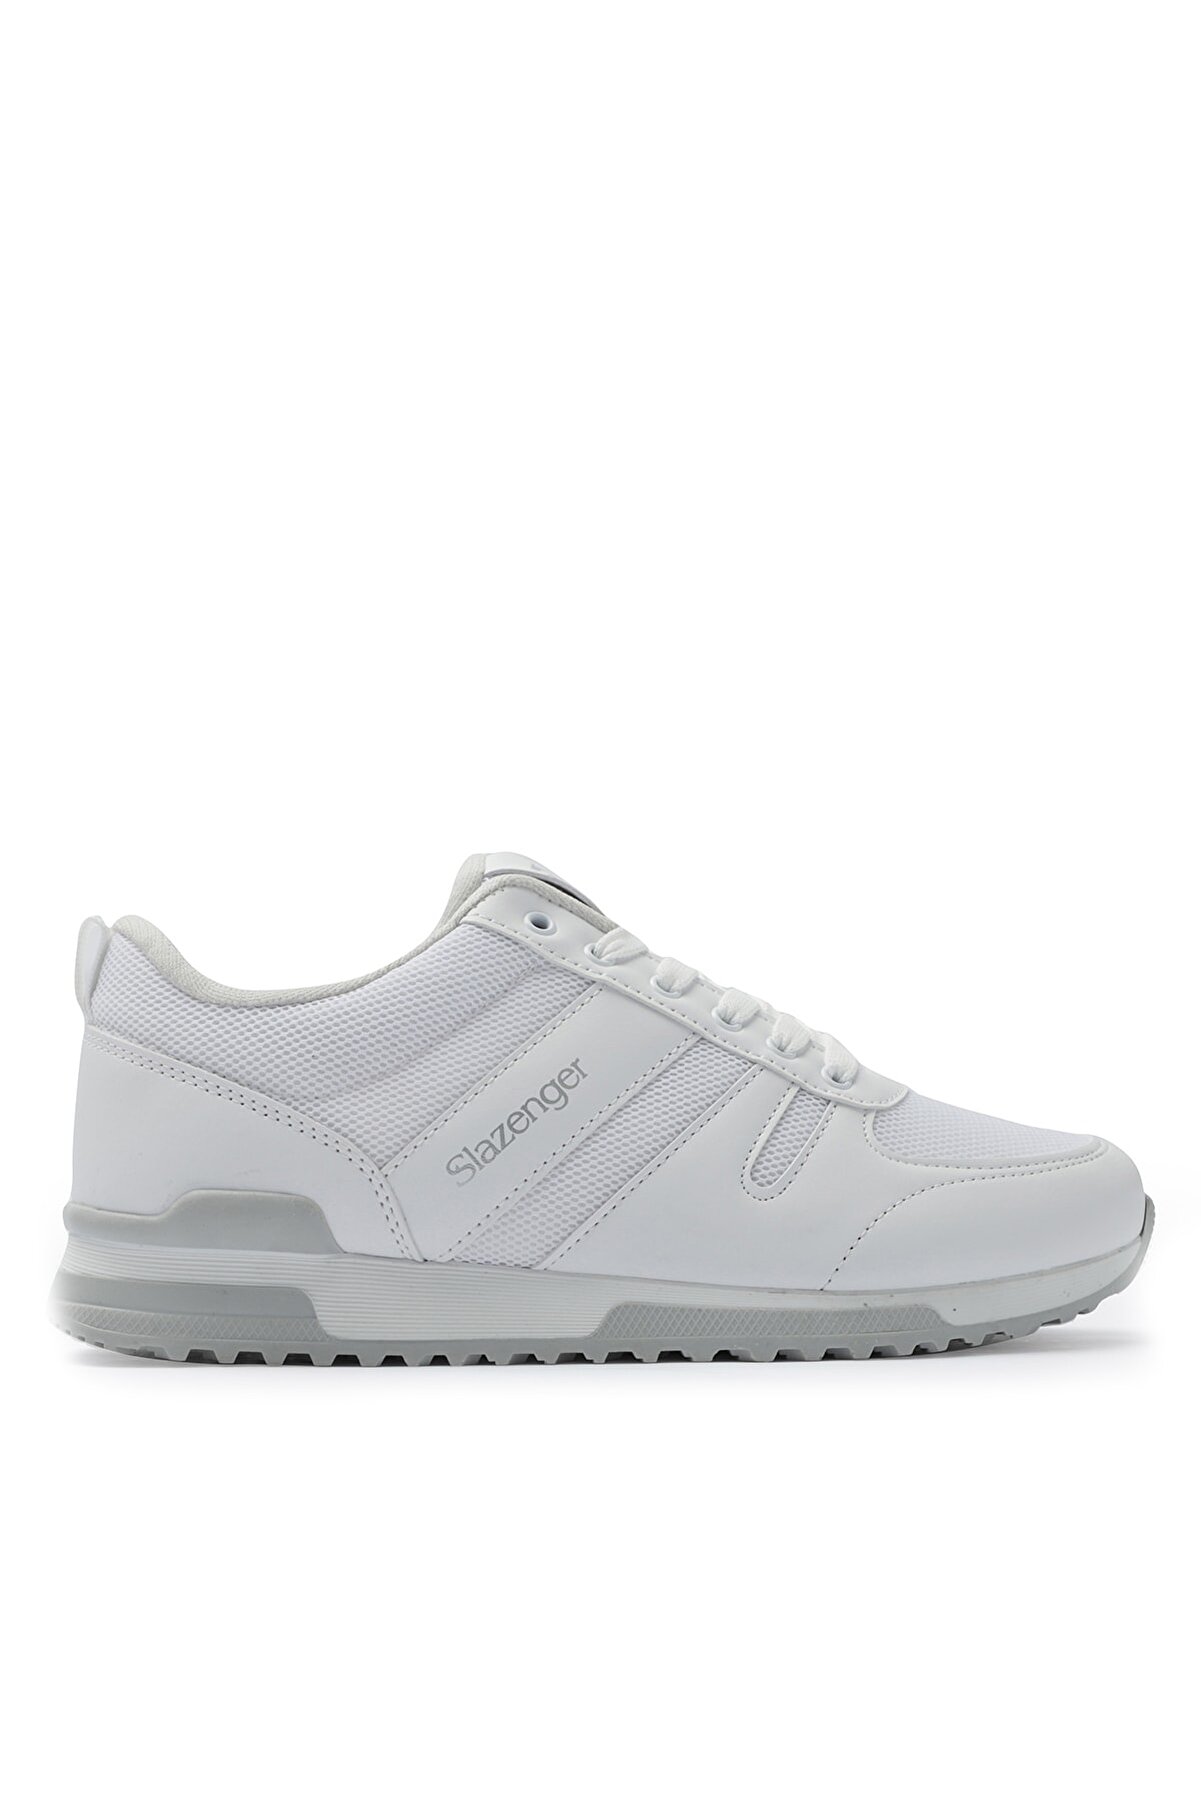 Slazenger Edwın Sneaker Erkek Ayakkabı Beyaz / Gümüş Sa11le079